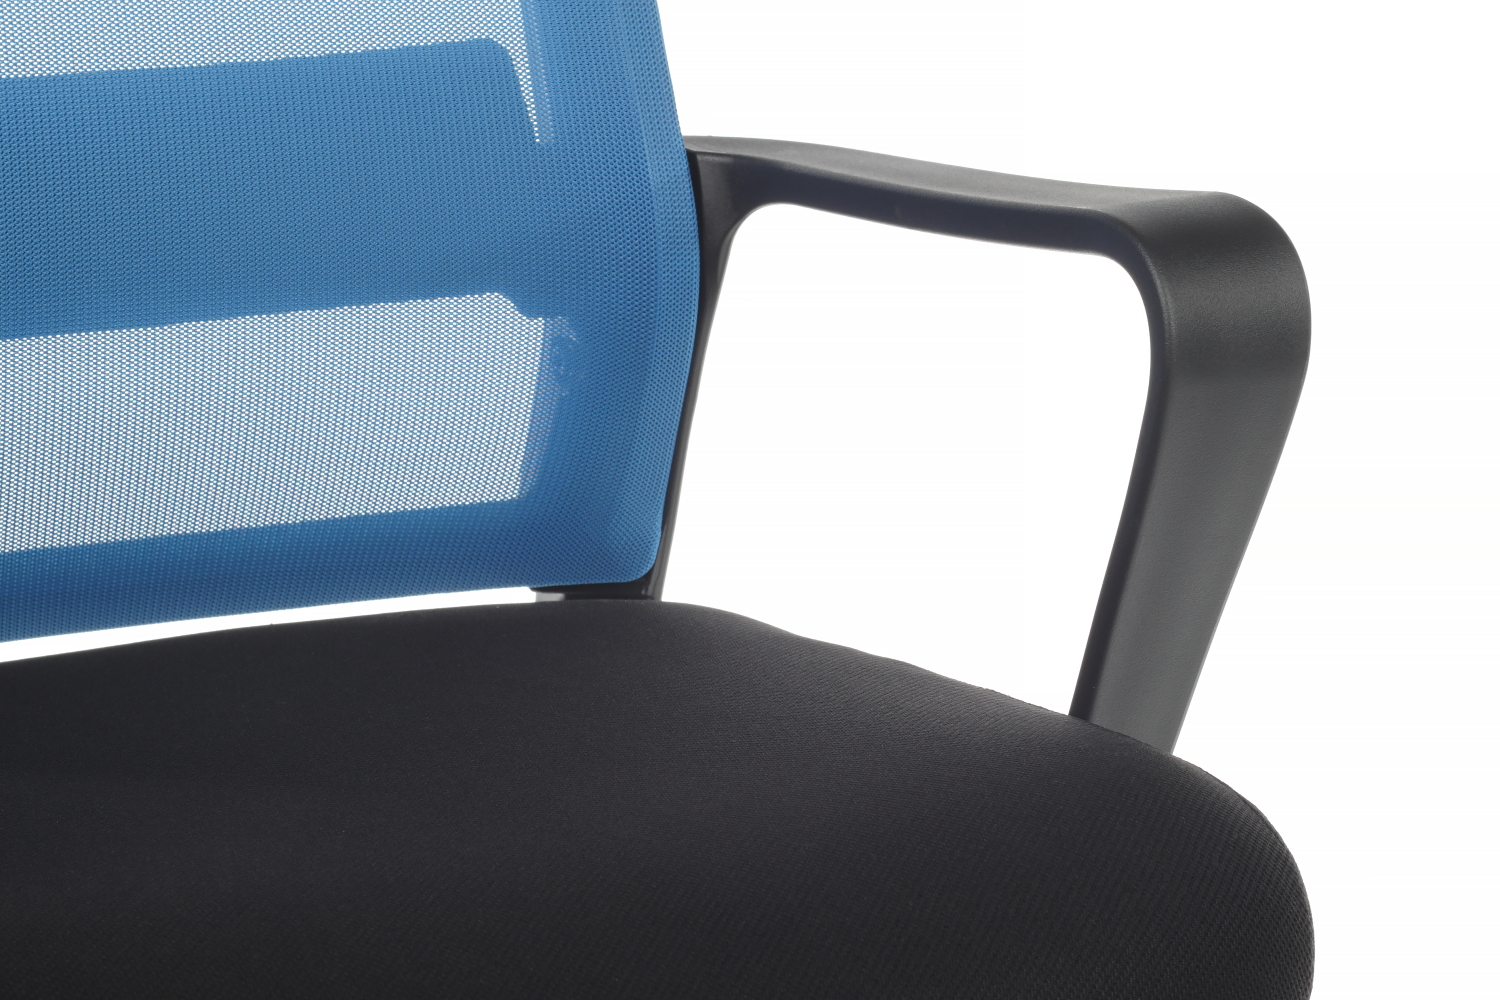 Кресло компьютерное Riva Chair Mint 1029HB черный пластик синий / черный